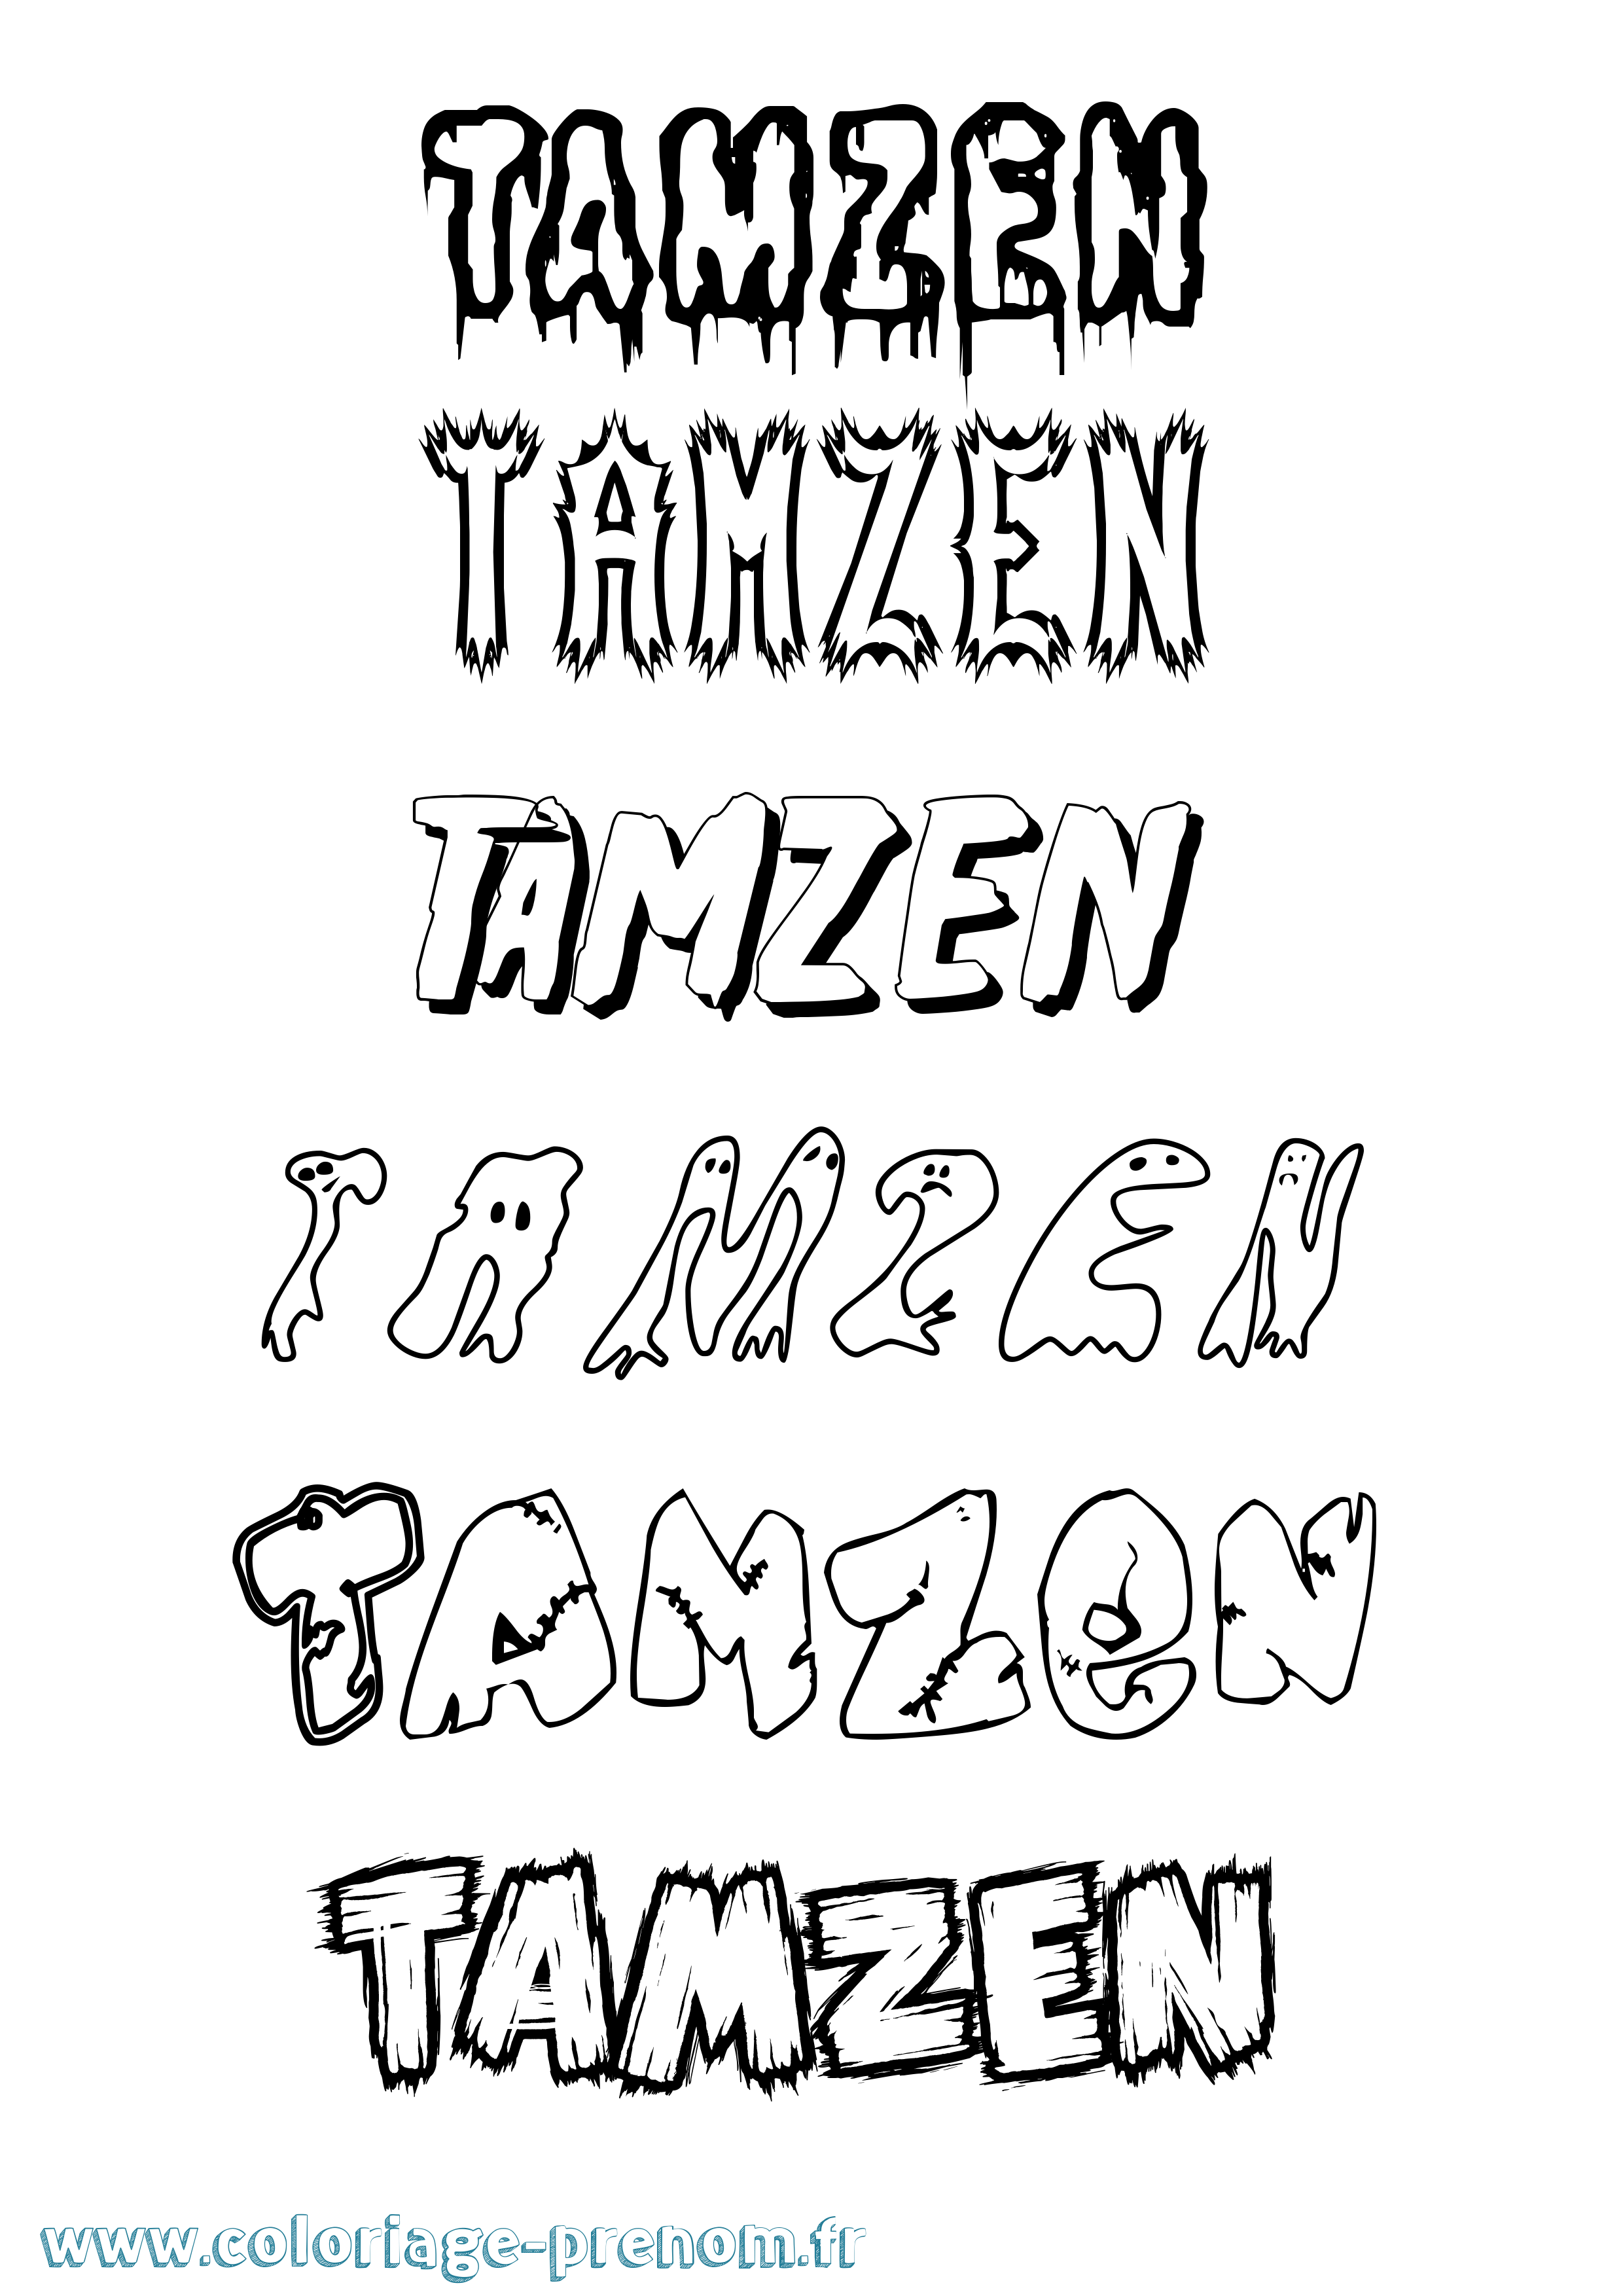 Coloriage prénom Tamzen Frisson